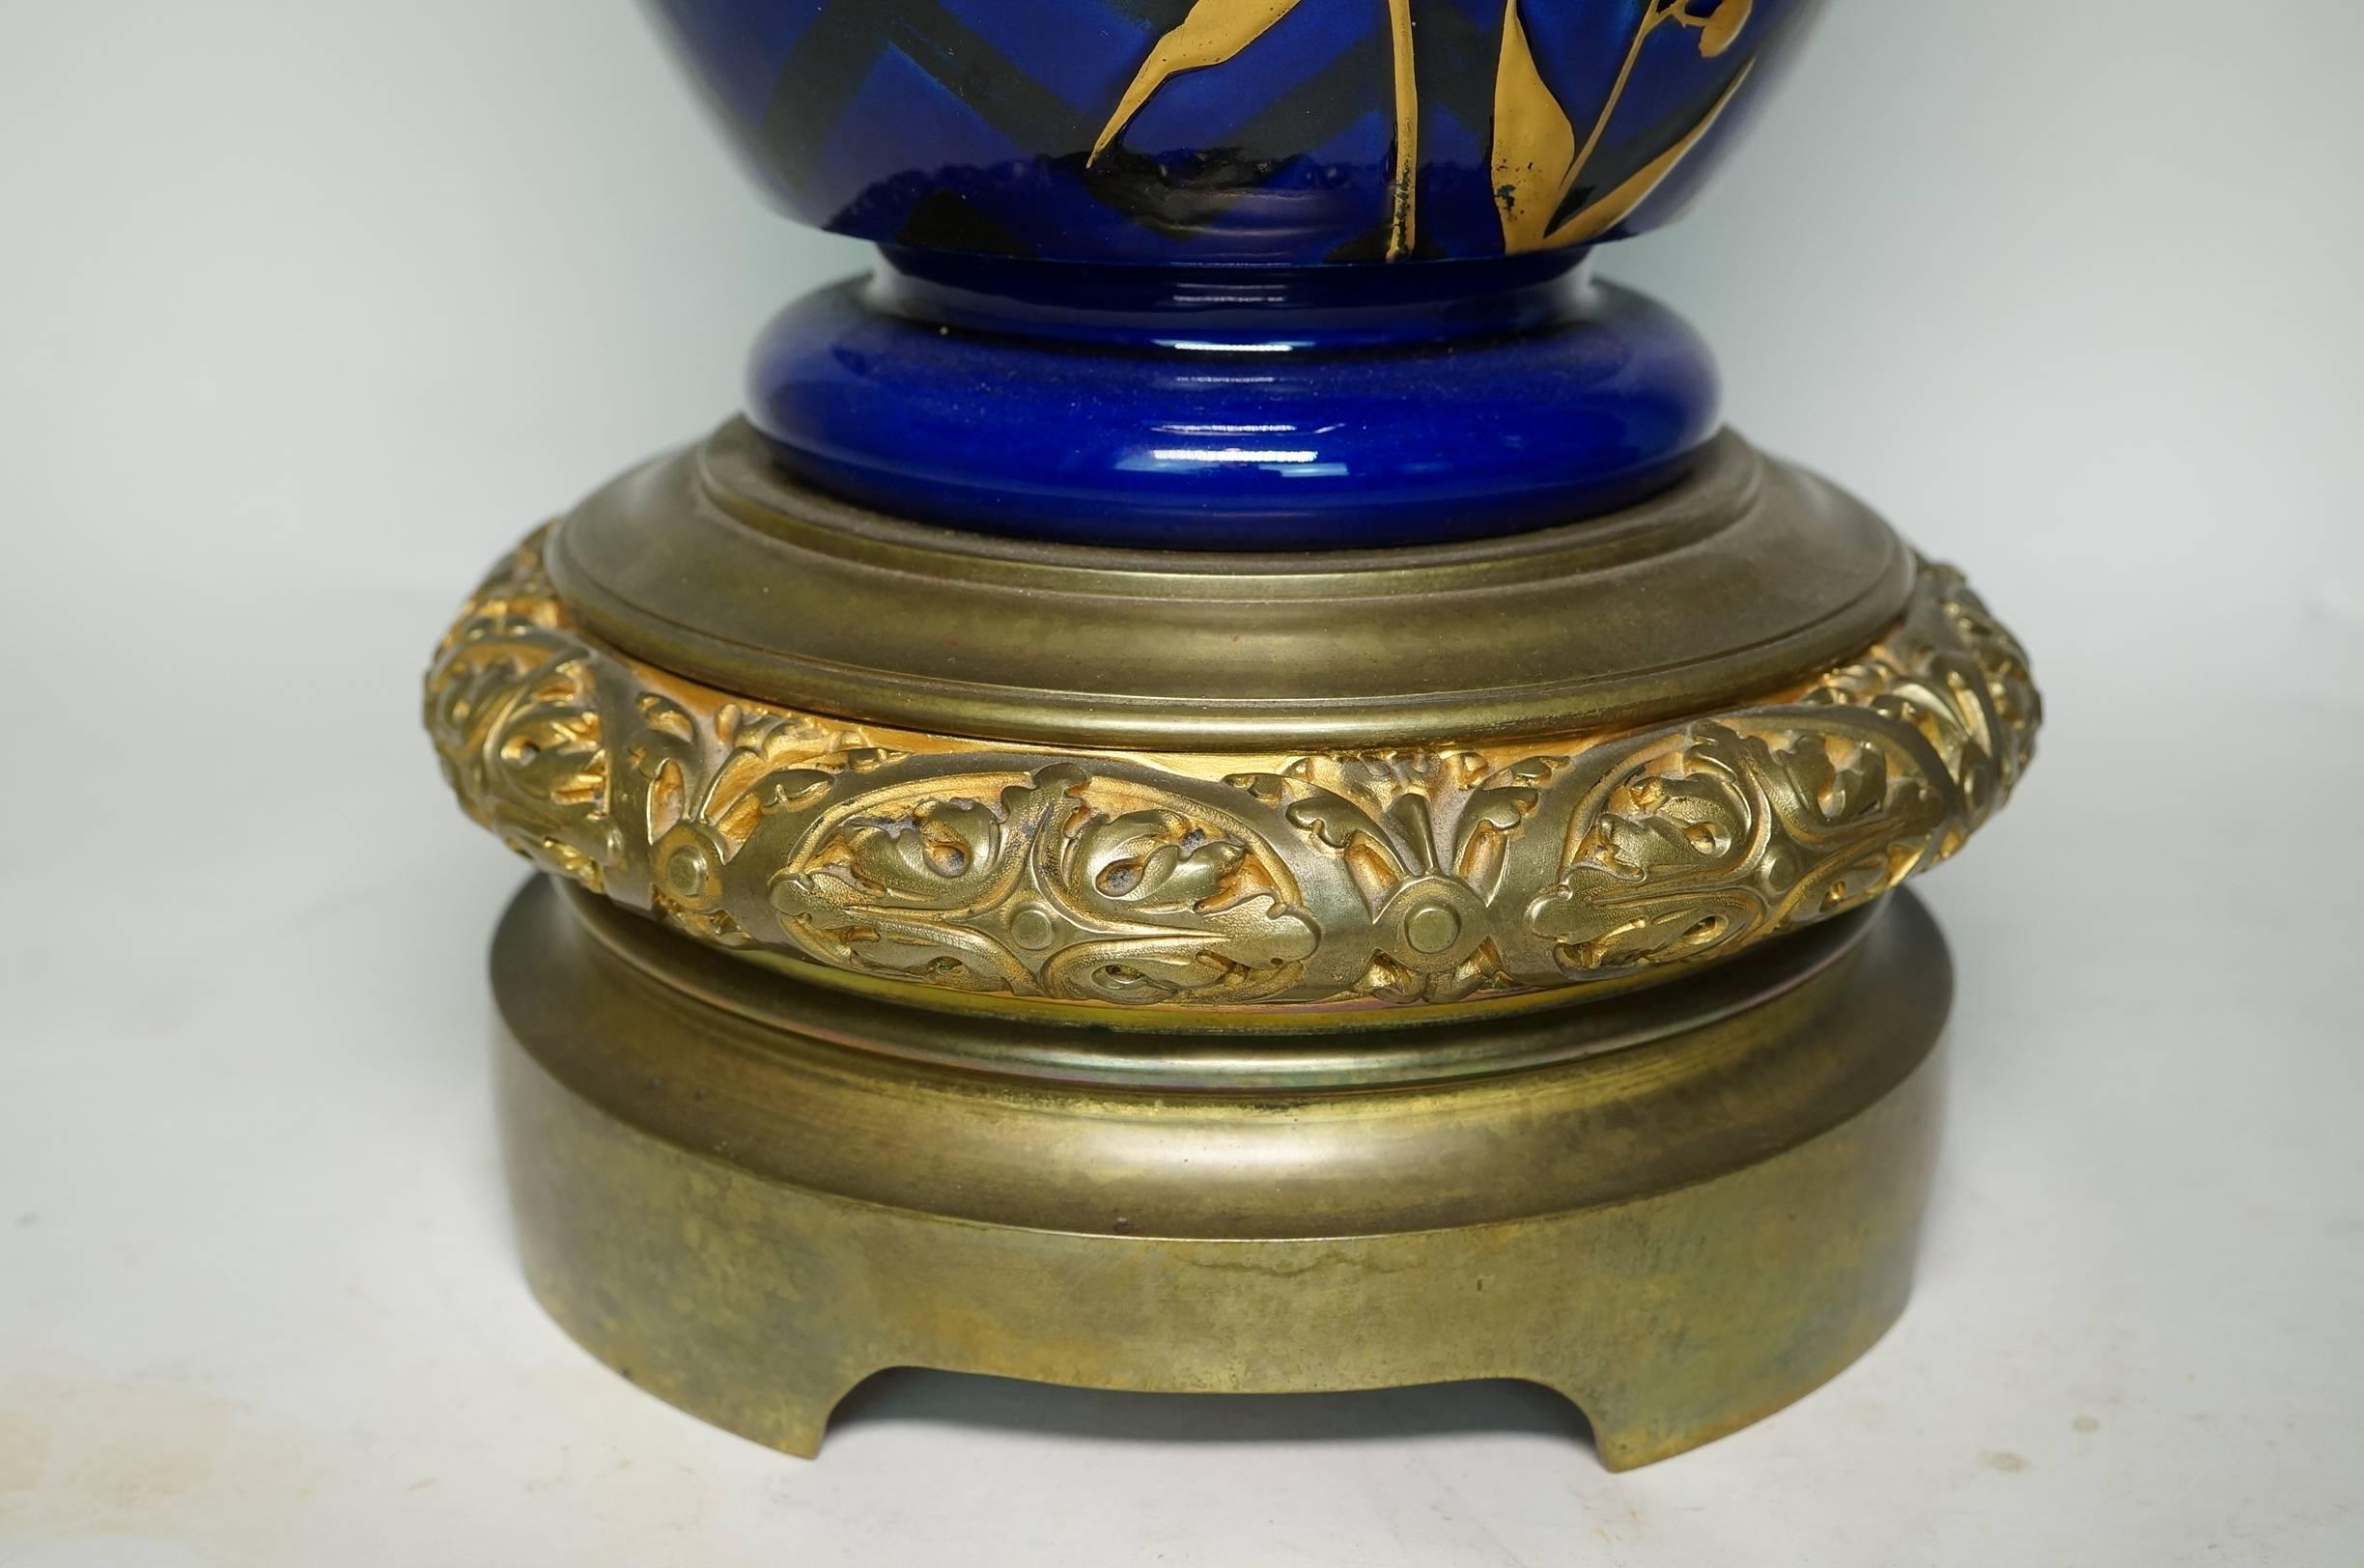 Großes Paar Vasen aus kobaltblauem Porzellan und Bronze mit Blumendekor, Schmetterlingsmotiv und eingeschnittener Emaillearbeit.